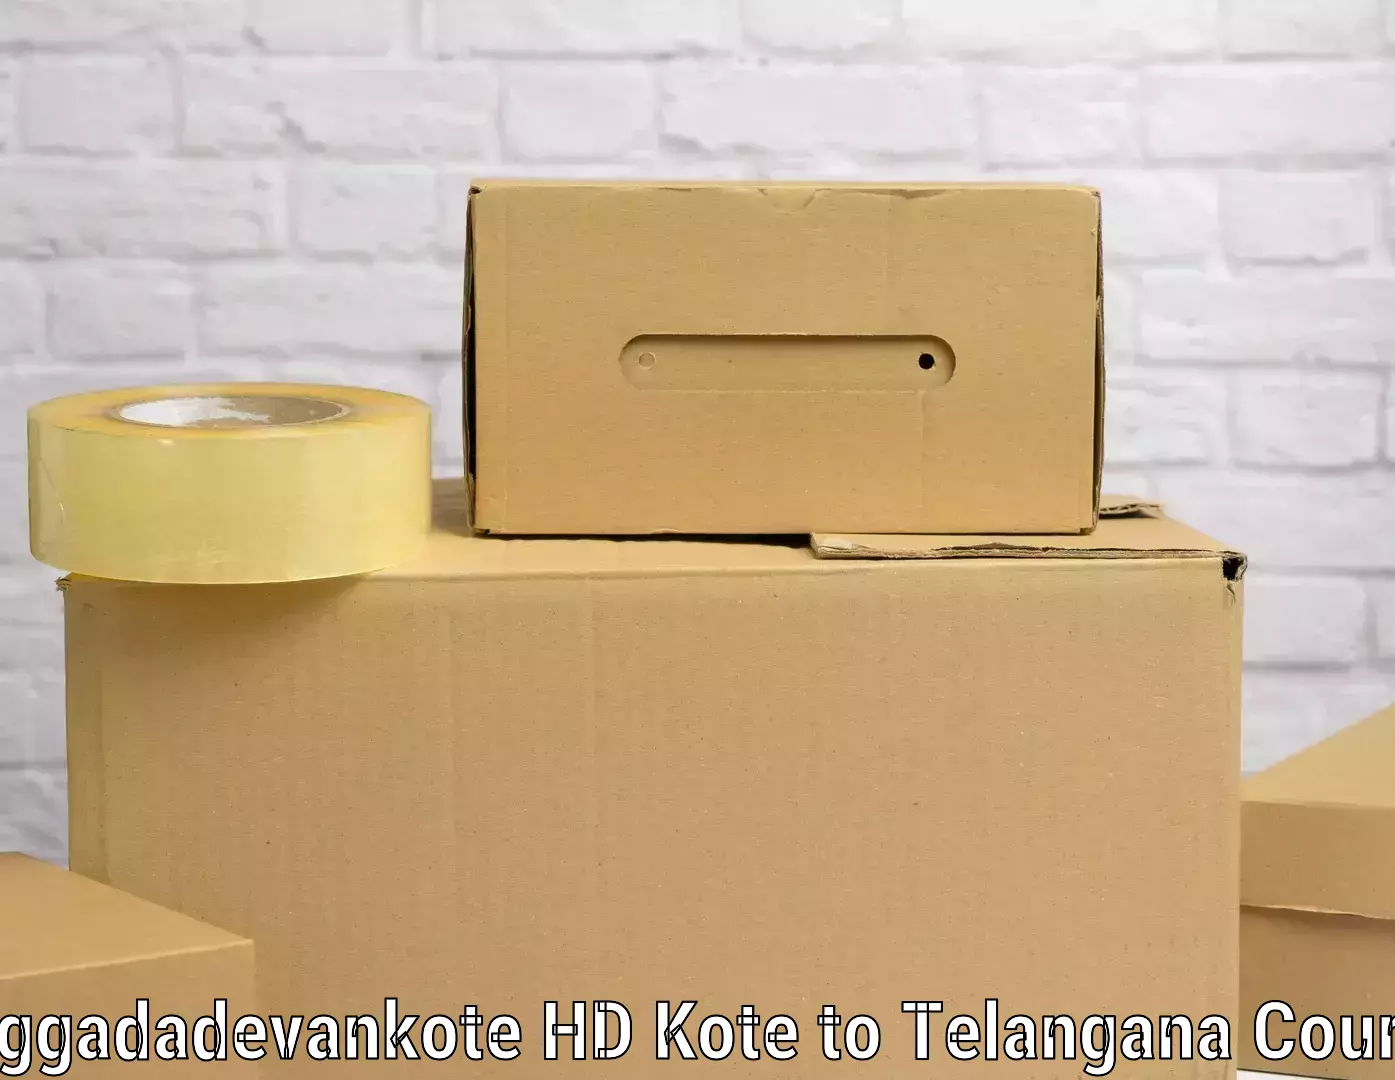 Baggage shipping schedule in Heggadadevankote HD Kote to Telangana